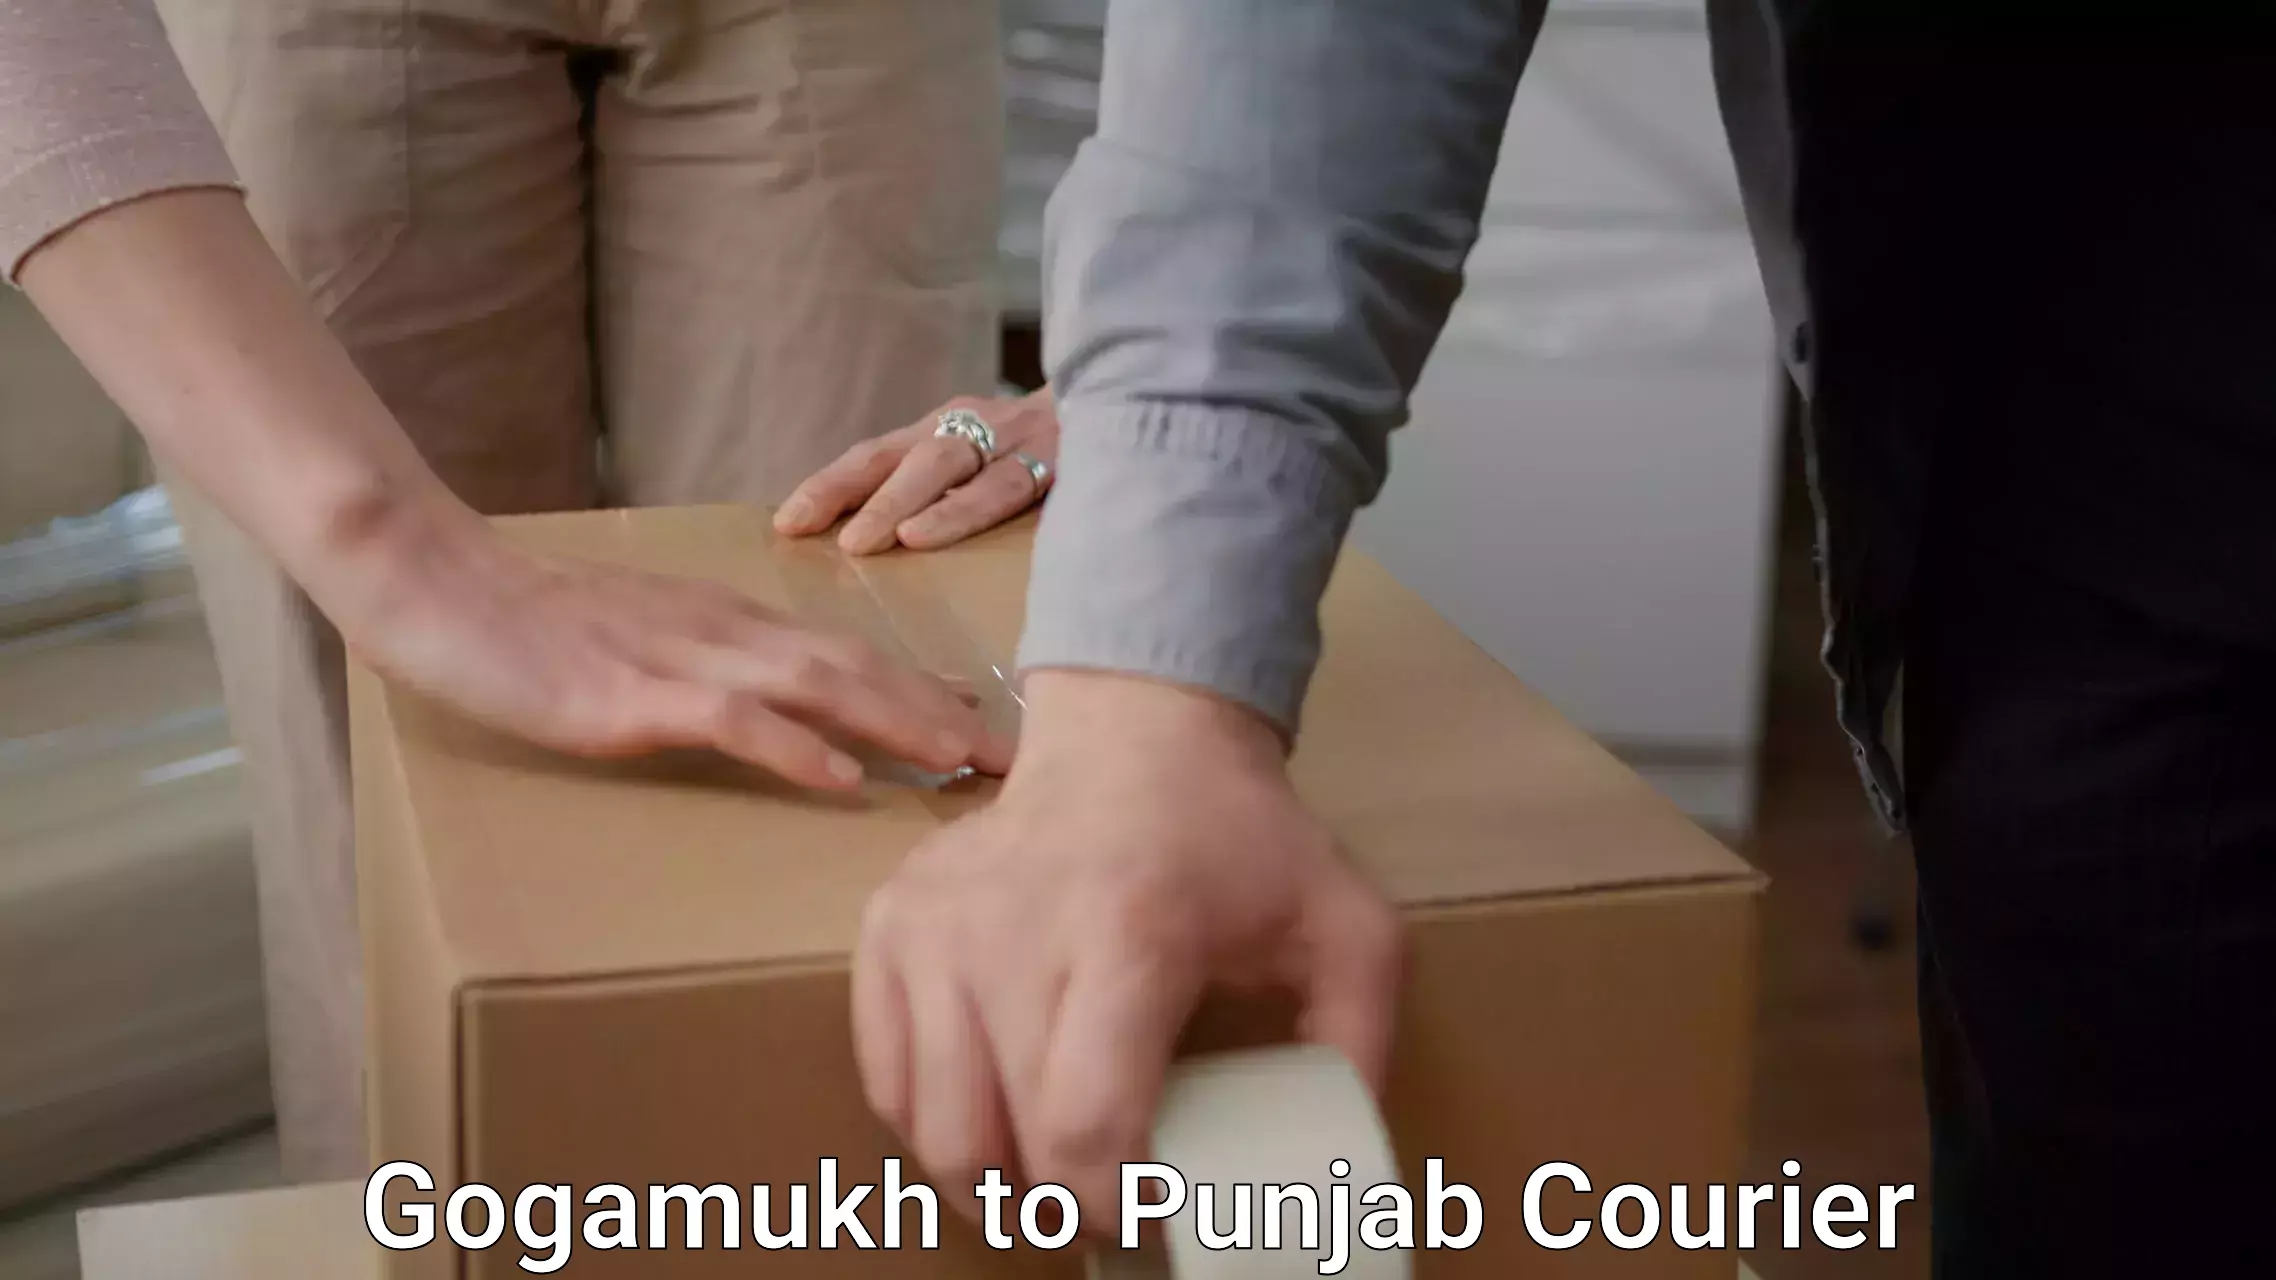 Efficient moving services Gogamukh to Punjab